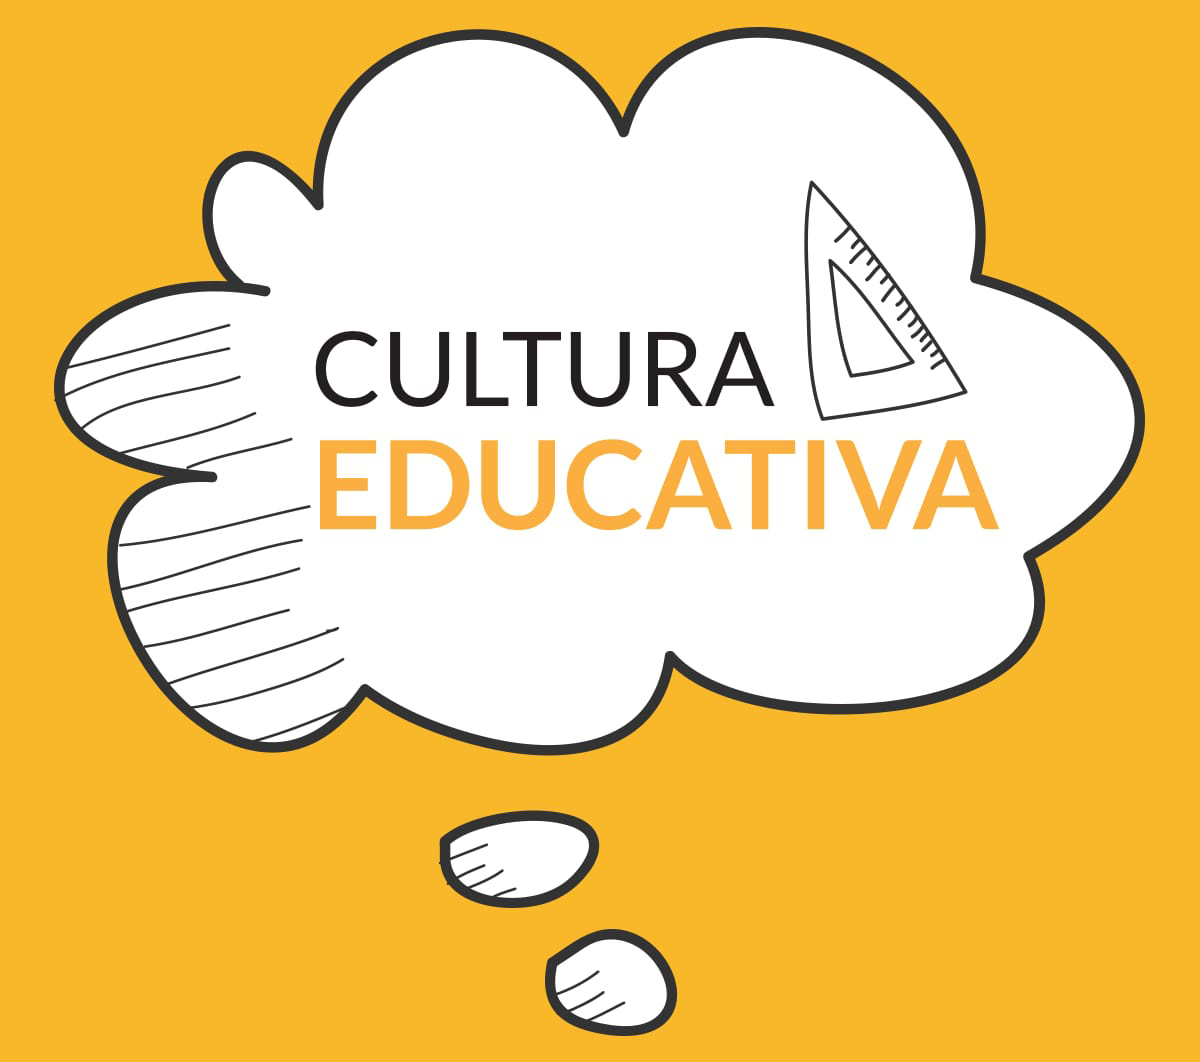 CulturaEducativa.com